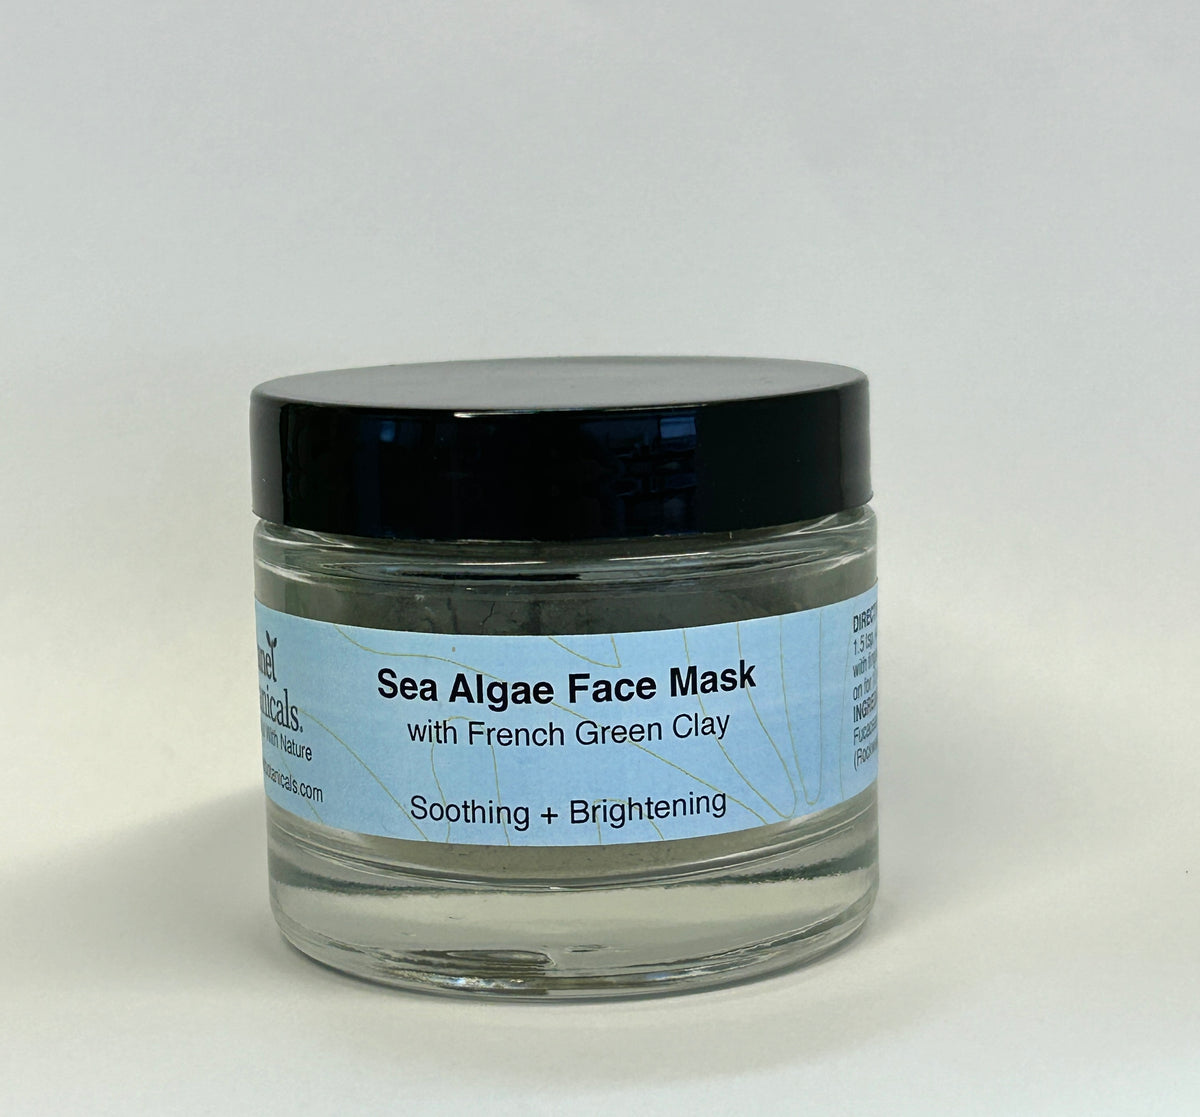 Sea Algae Face Mask